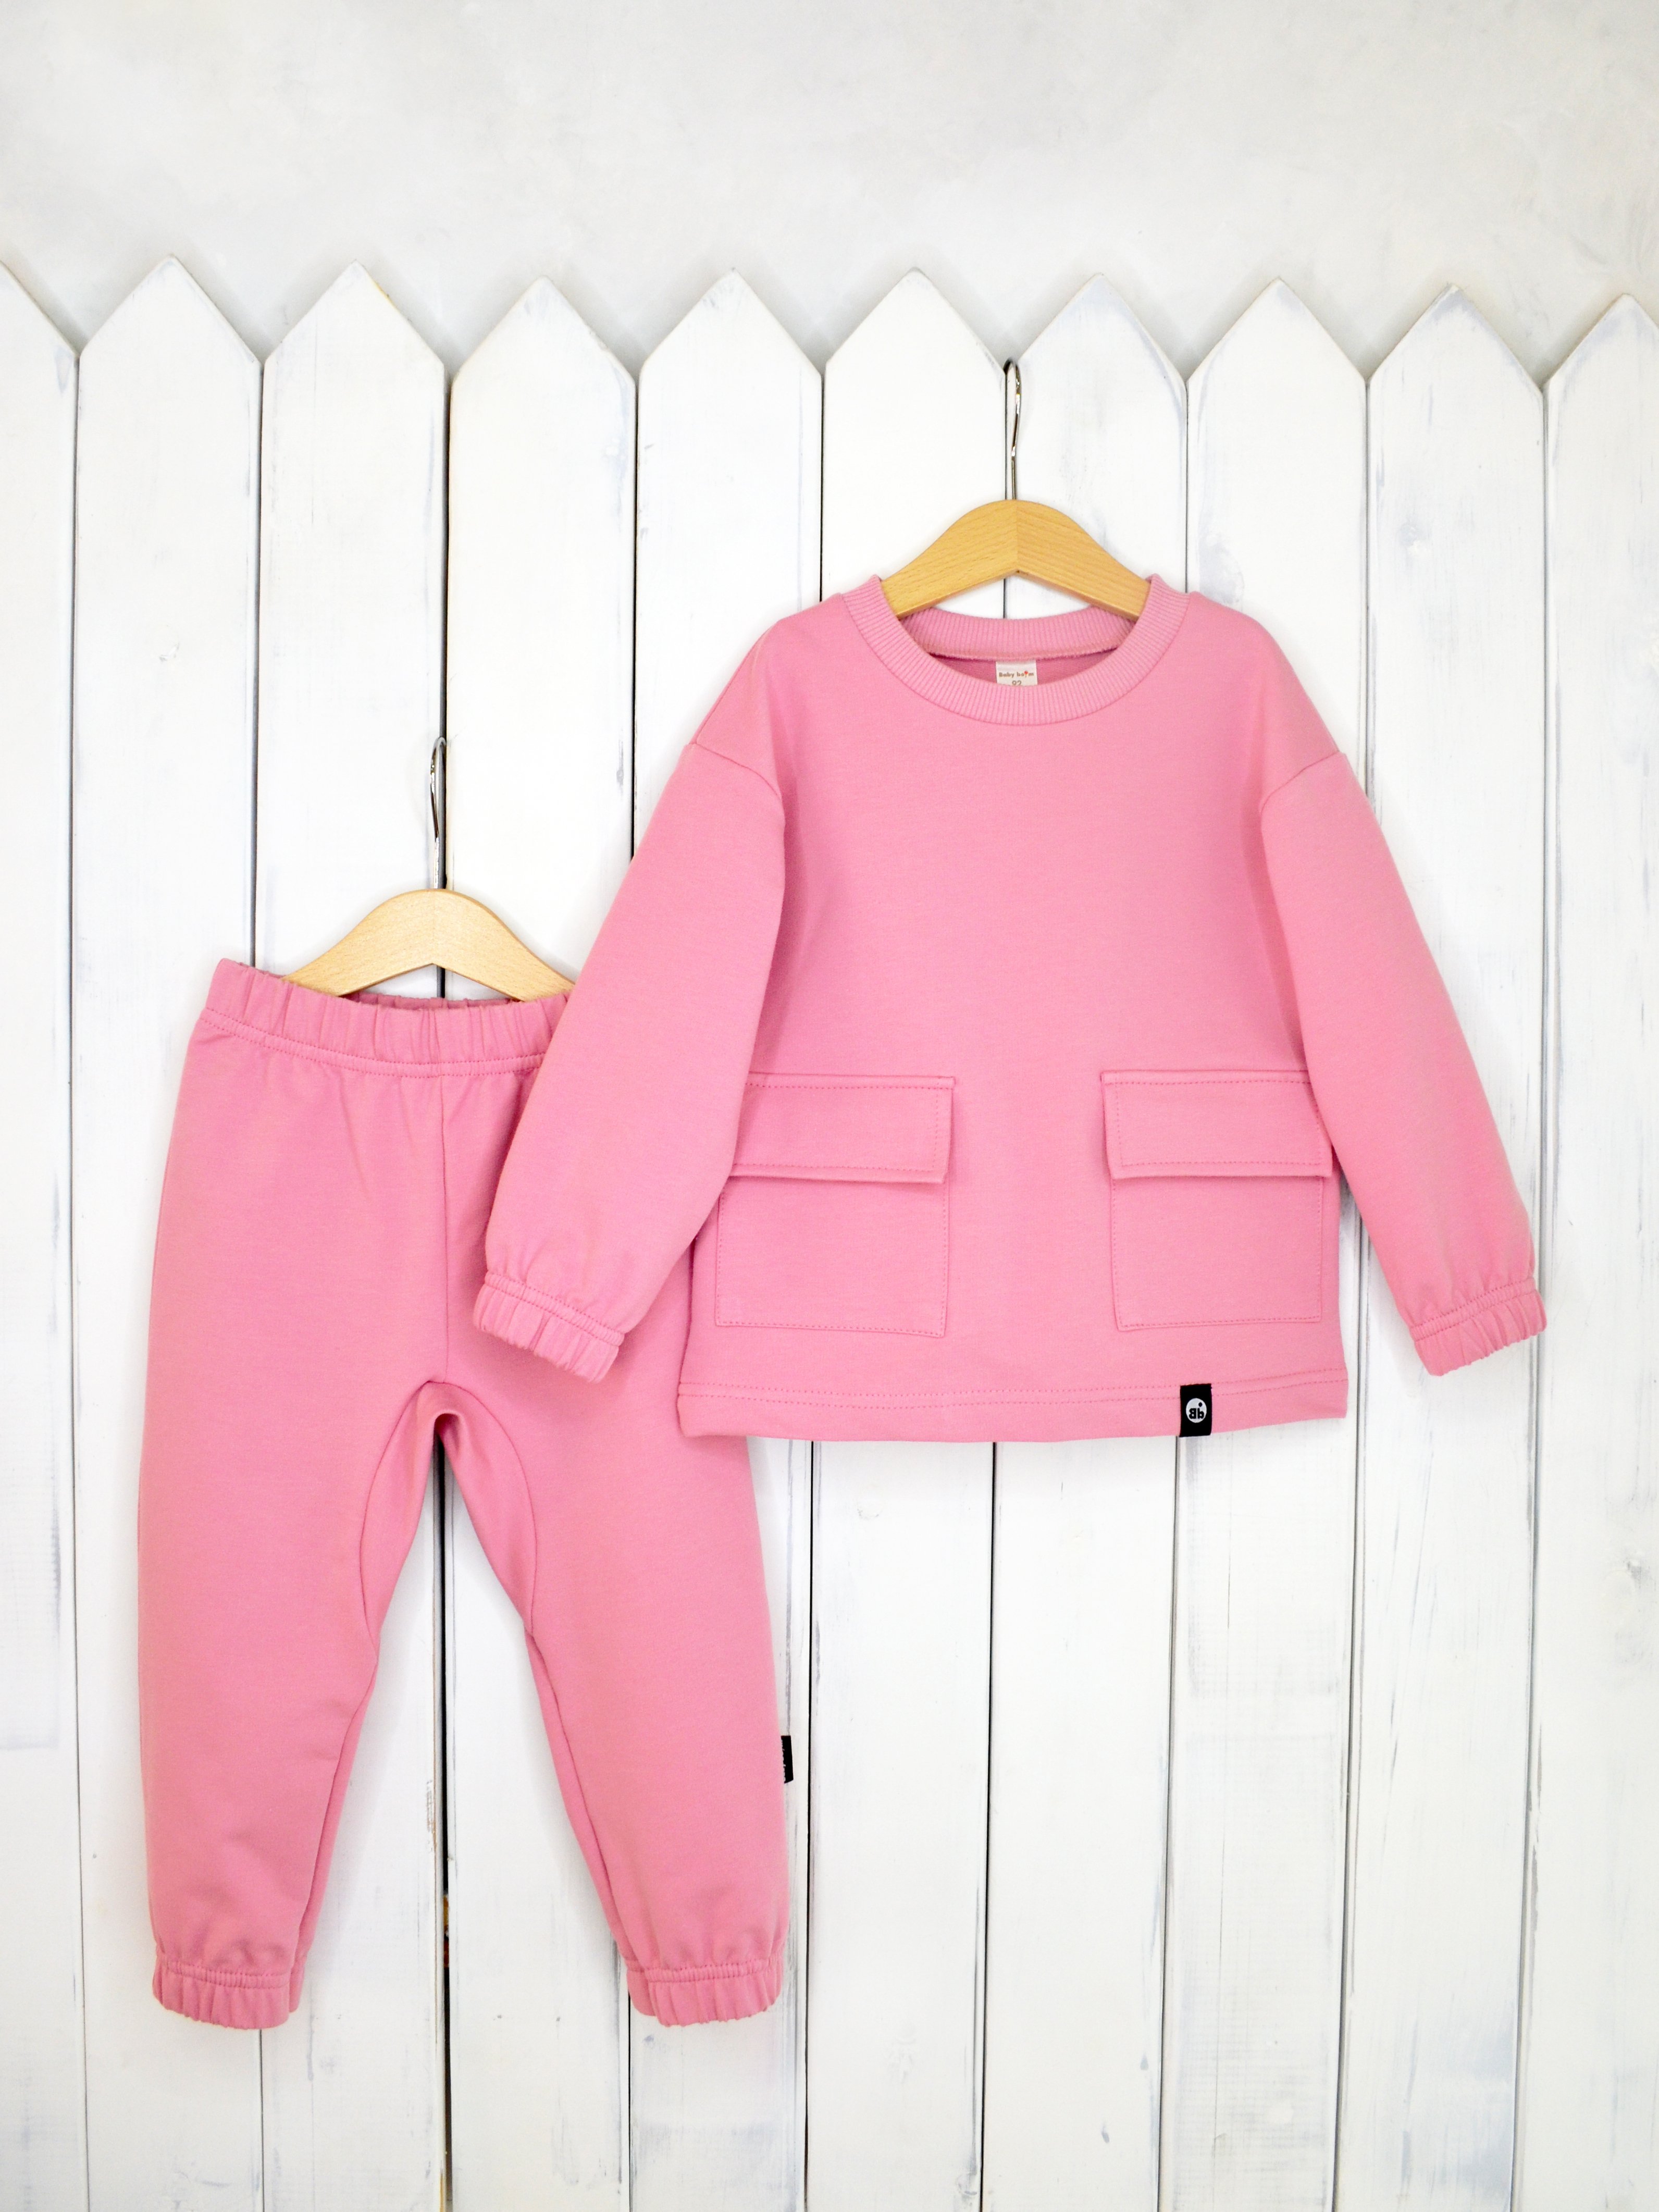 КД326/3-Ф Комплект детский джемпер+брюки цвет: розовый зефир р.92 Бэби Бум - Самара 